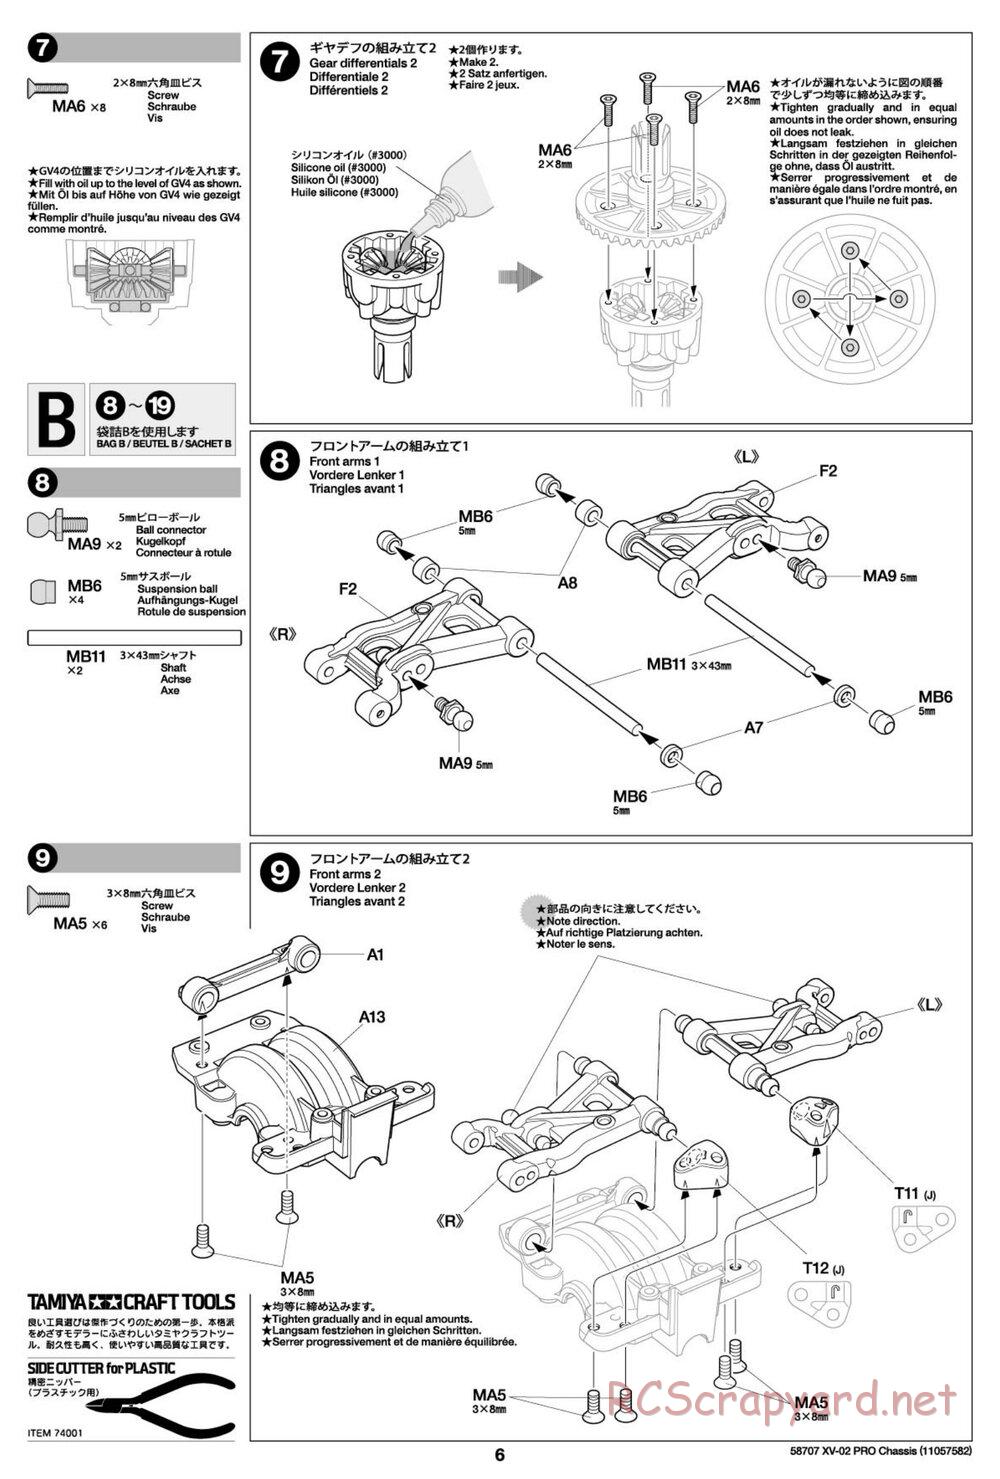 Tamiya - XV-02 Pro Chassis - Manual - Page 6